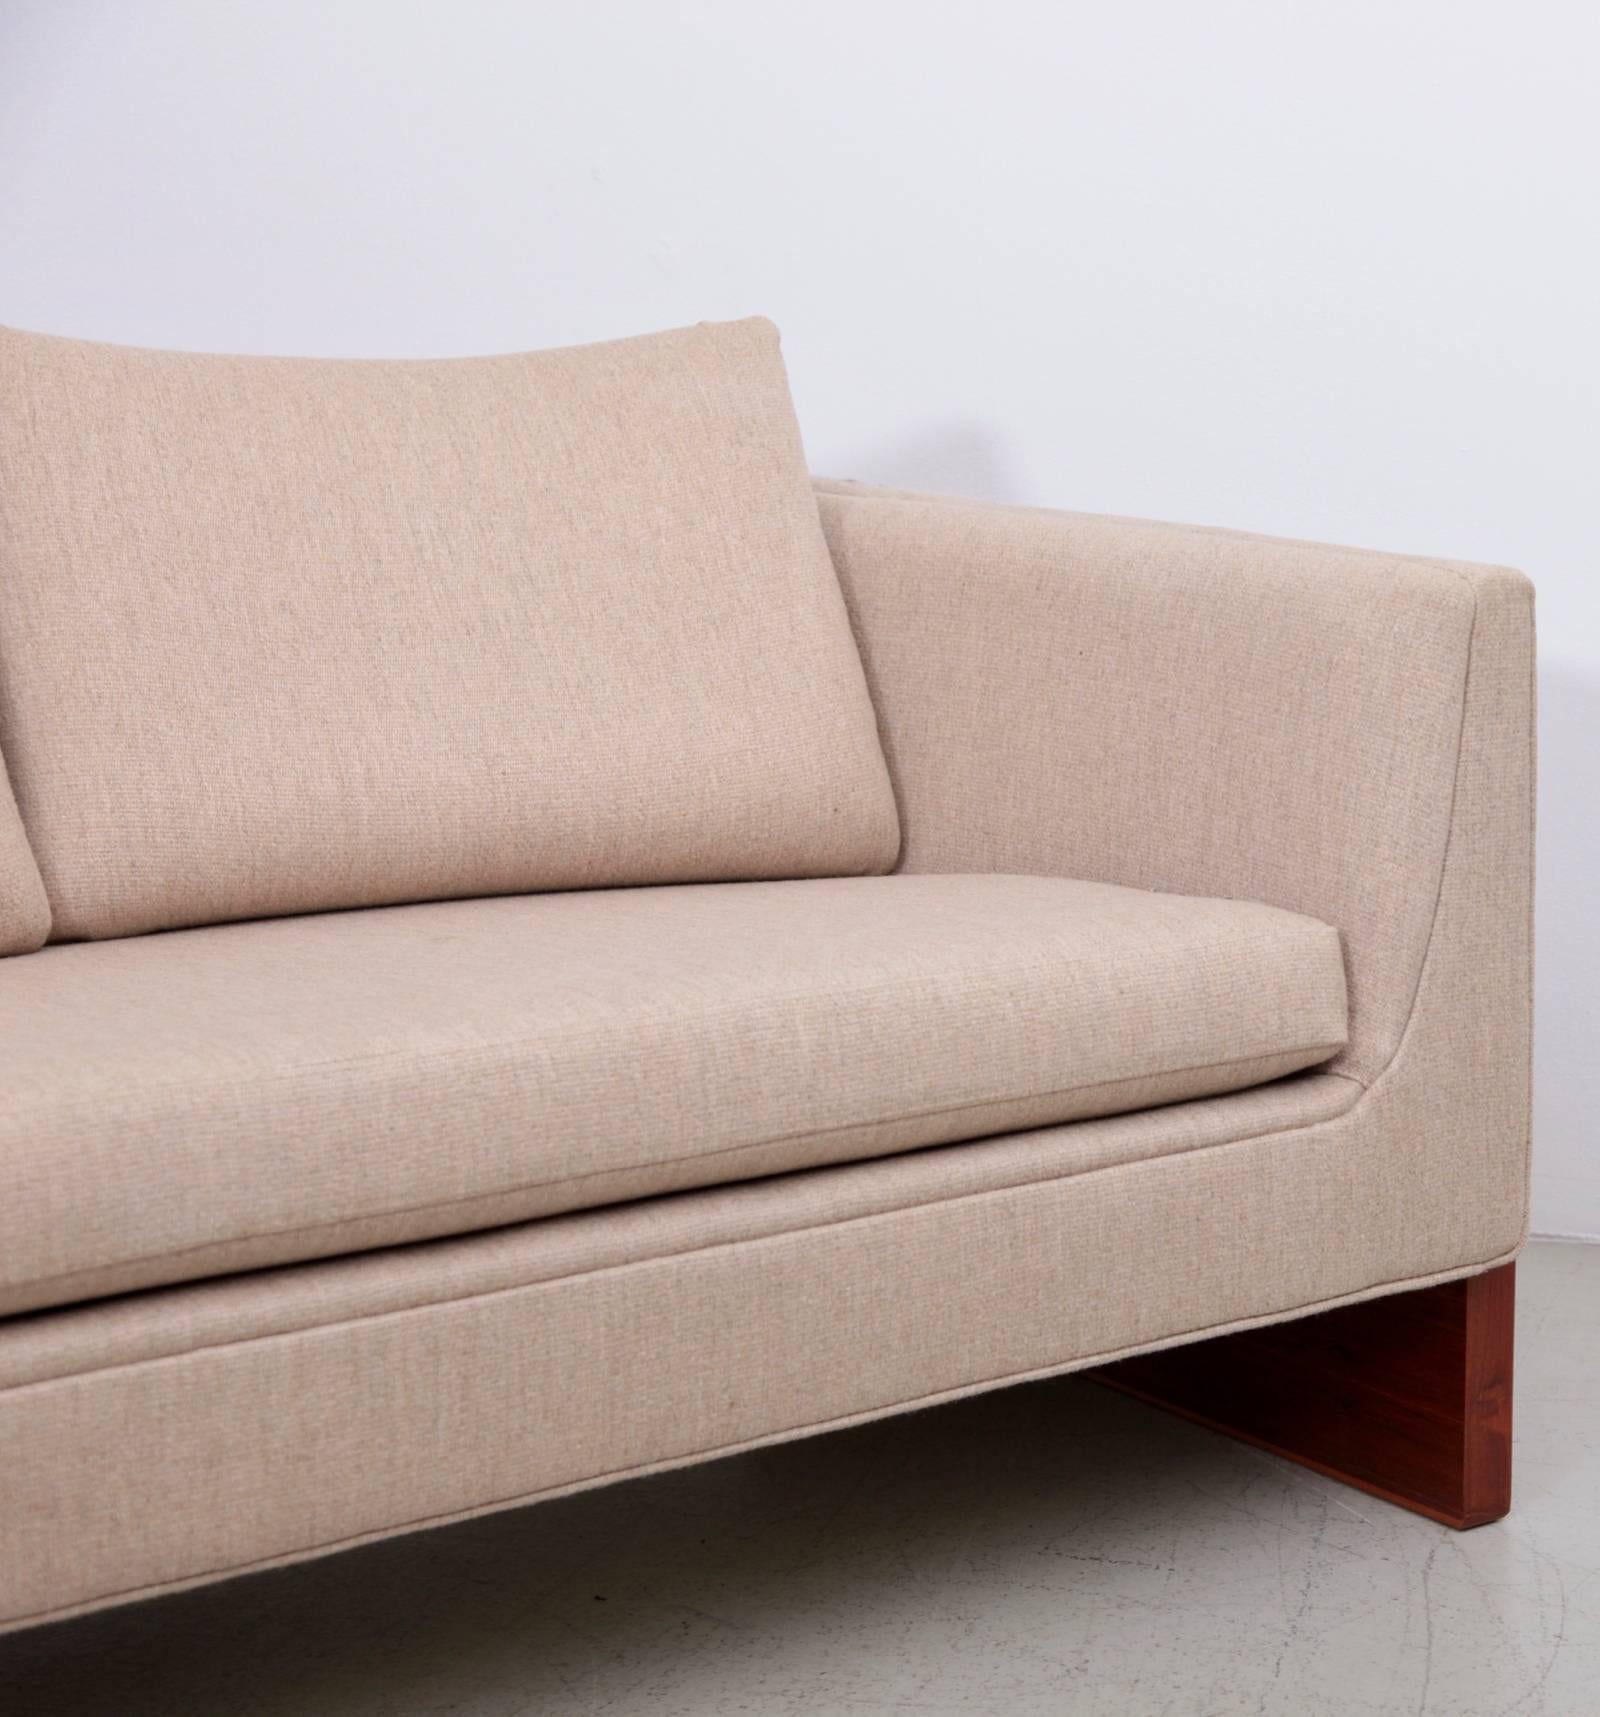 Fabric Milo Baughman Case Sofa Set